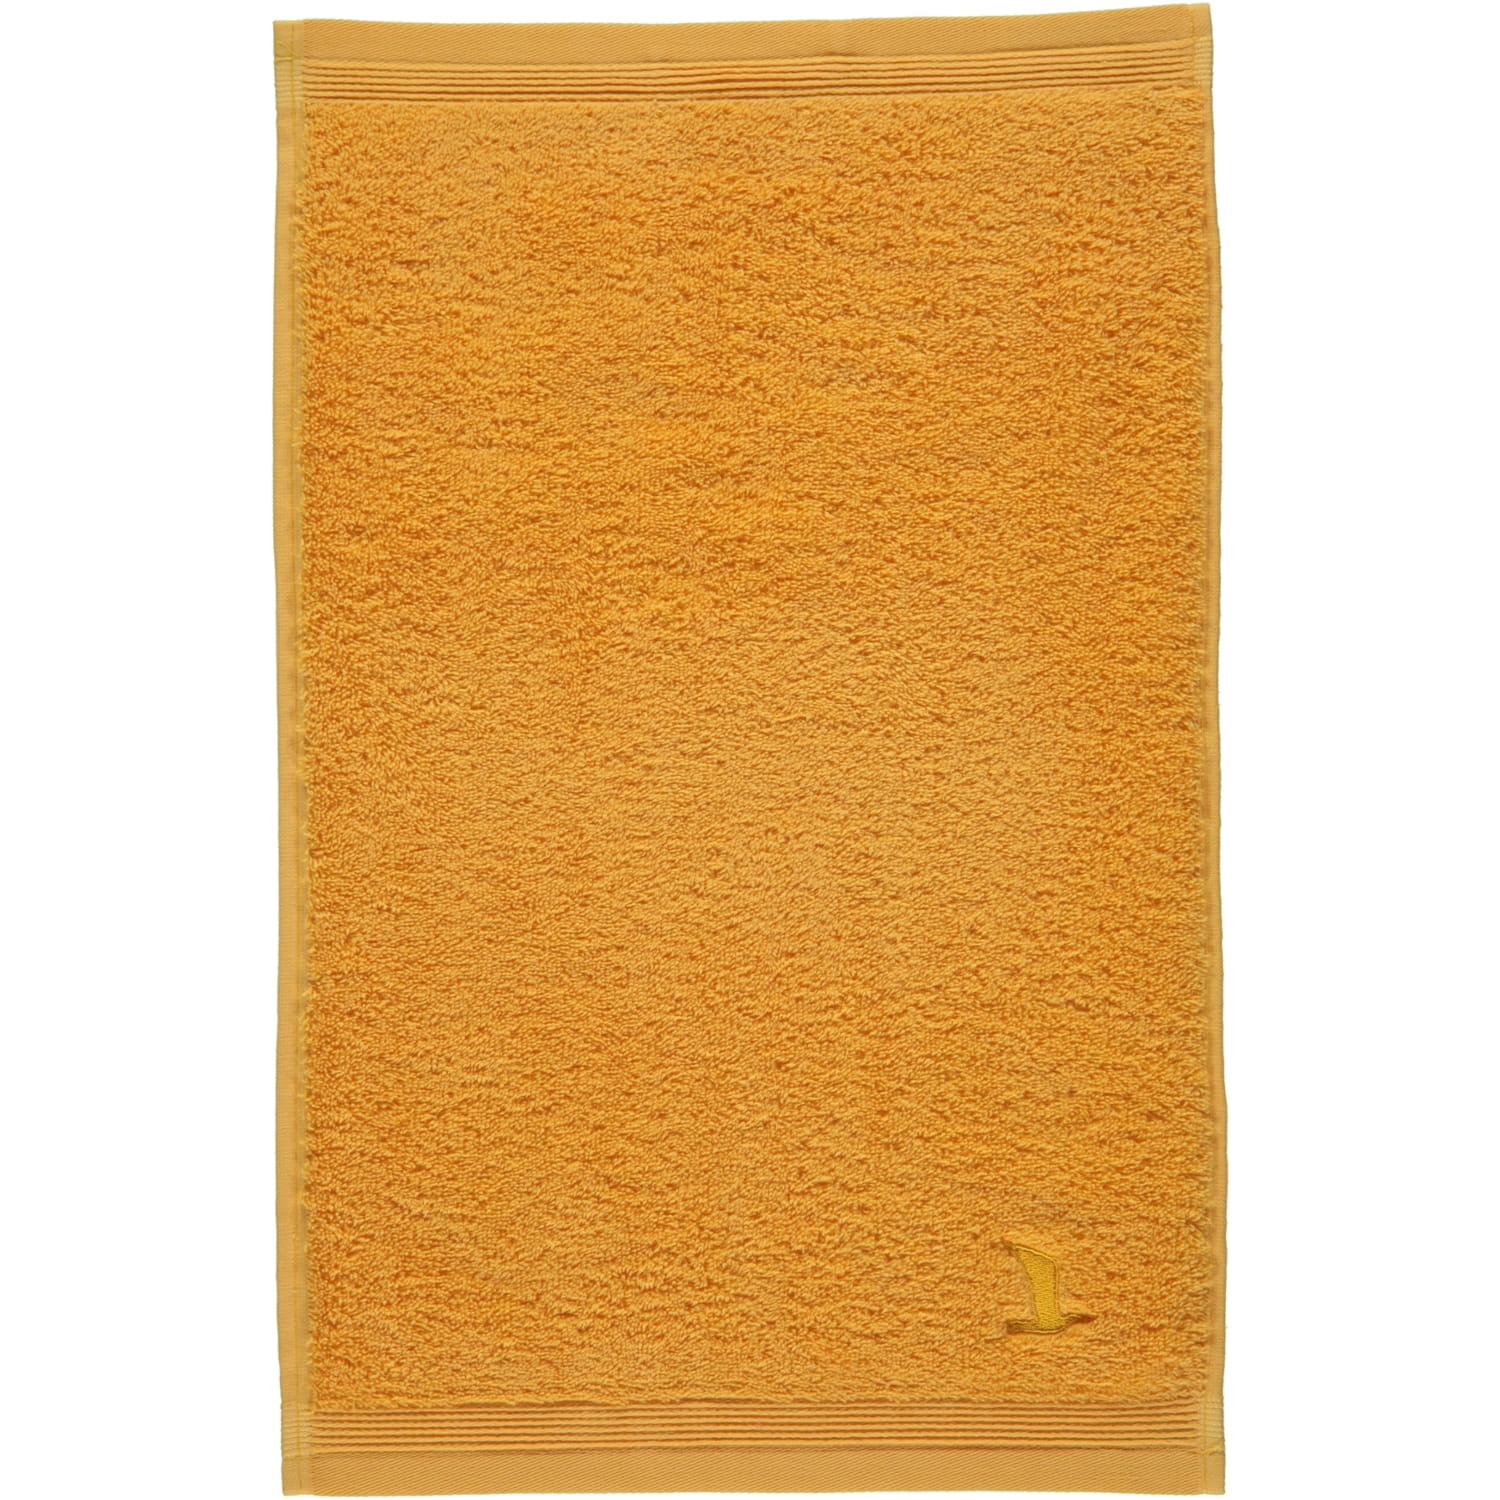 Möve - Superwuschel - Marken Farbe: | (0-1725/8775) 115 gold - Möve Handtücher | Möve 